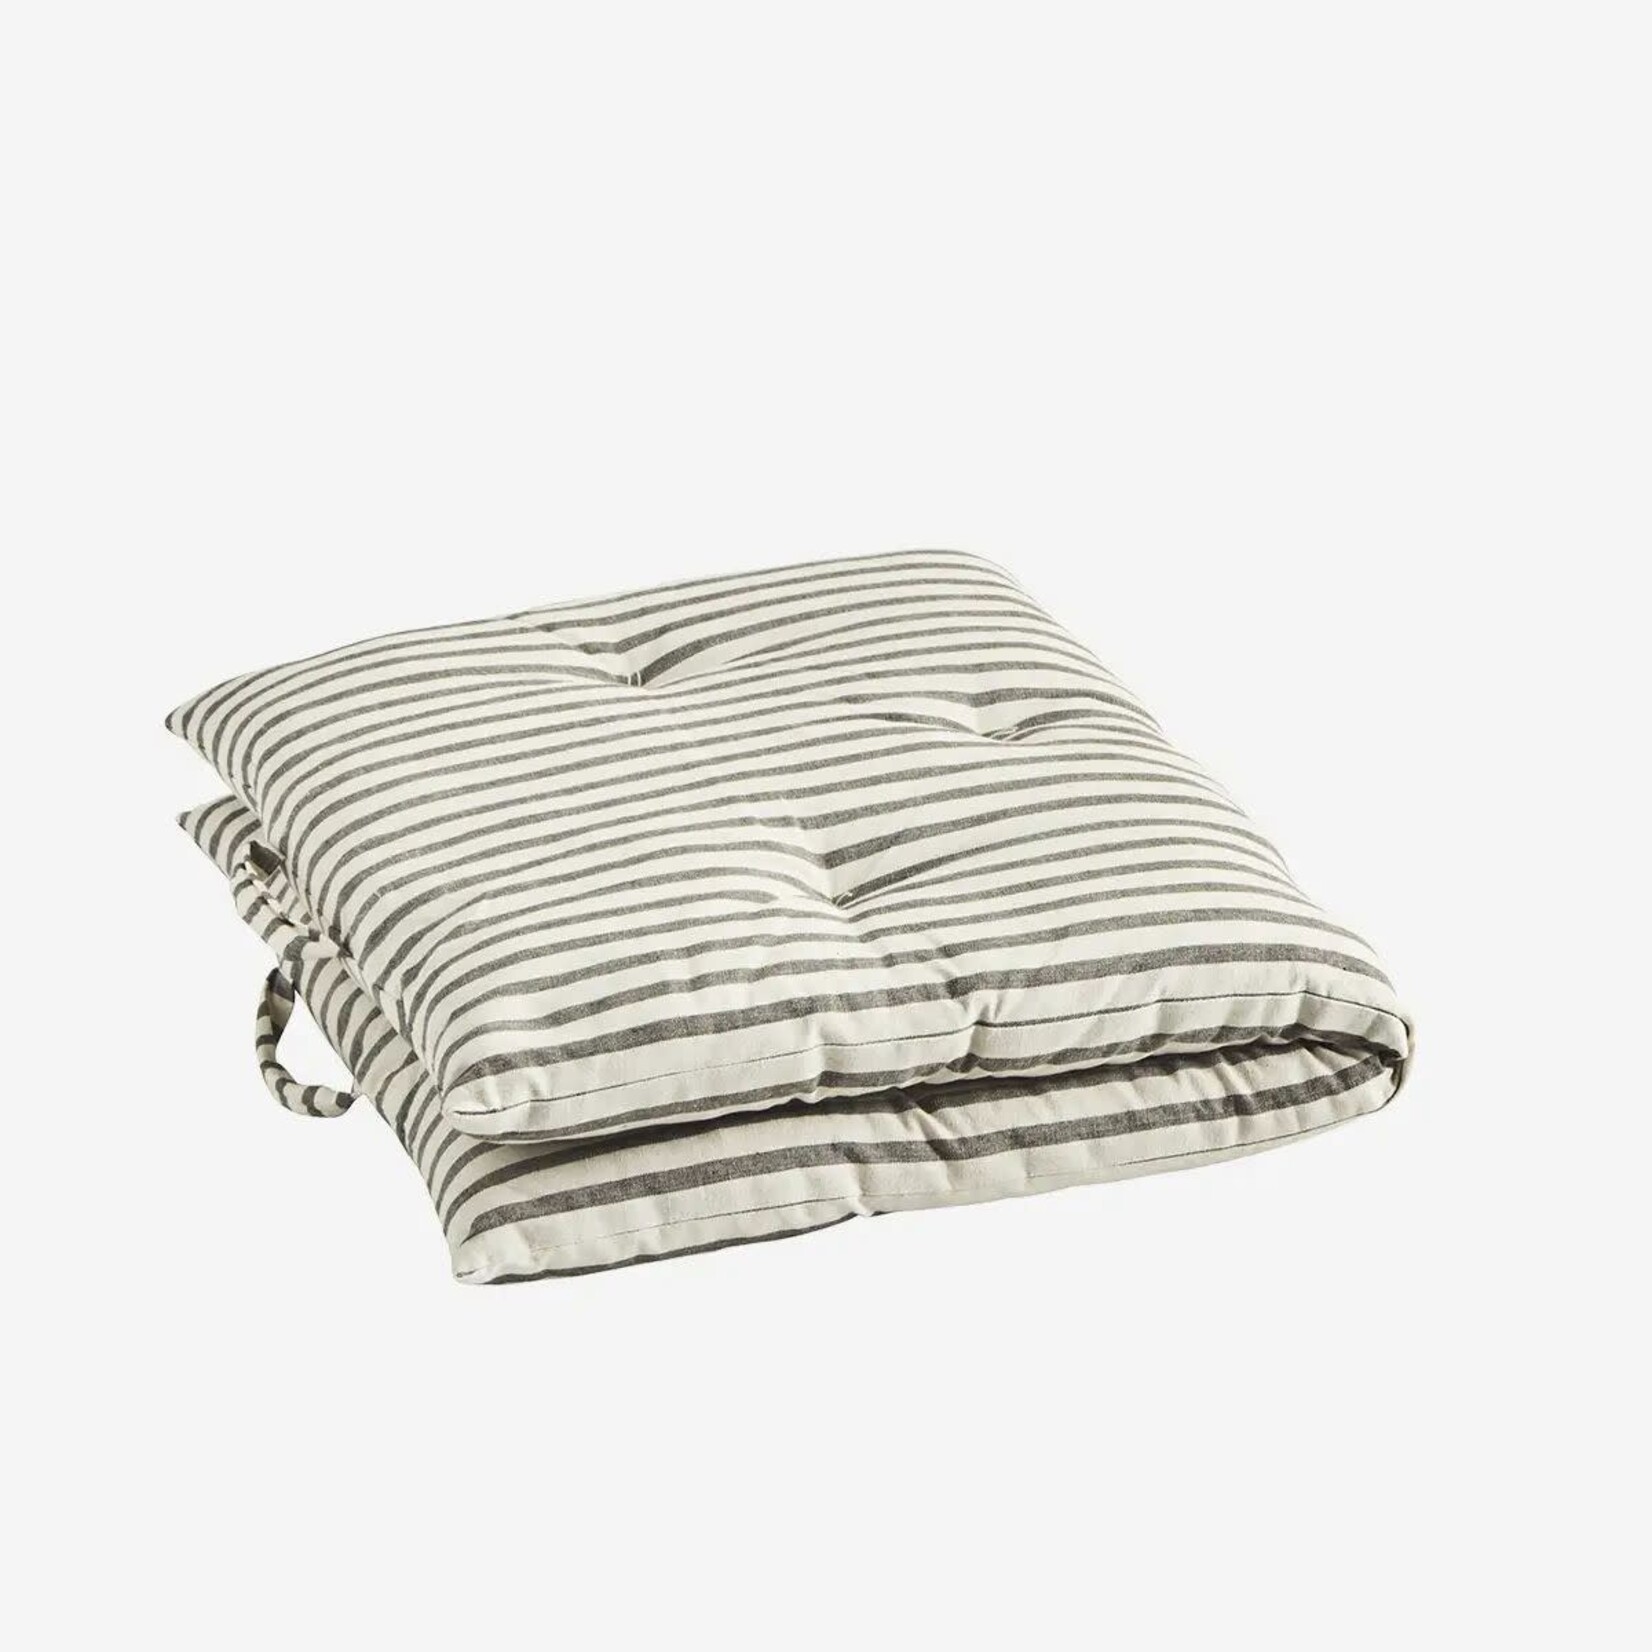 Madam Stoltz Printed cotton mattress/matras Off white, grey